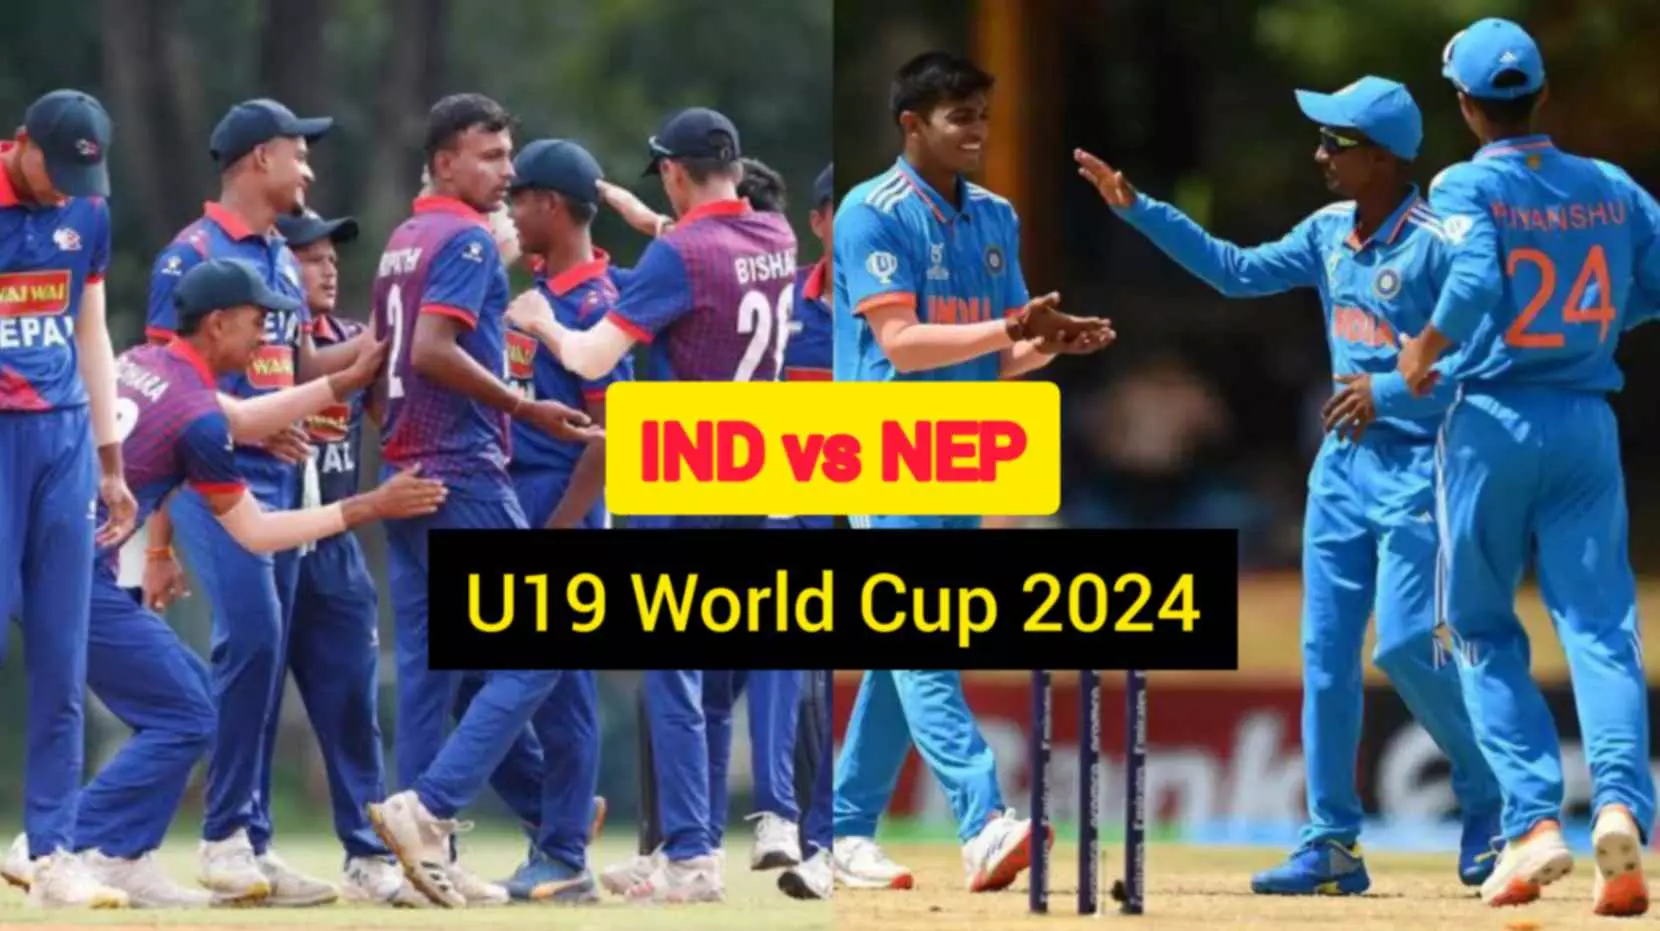 IND vs NEP U19 World Cup 2024: भारत ने टॉस जीतकर किया बल्लेबाजी का फैसला, यहां देखें दोनों देशों की प्लेइंग 11...